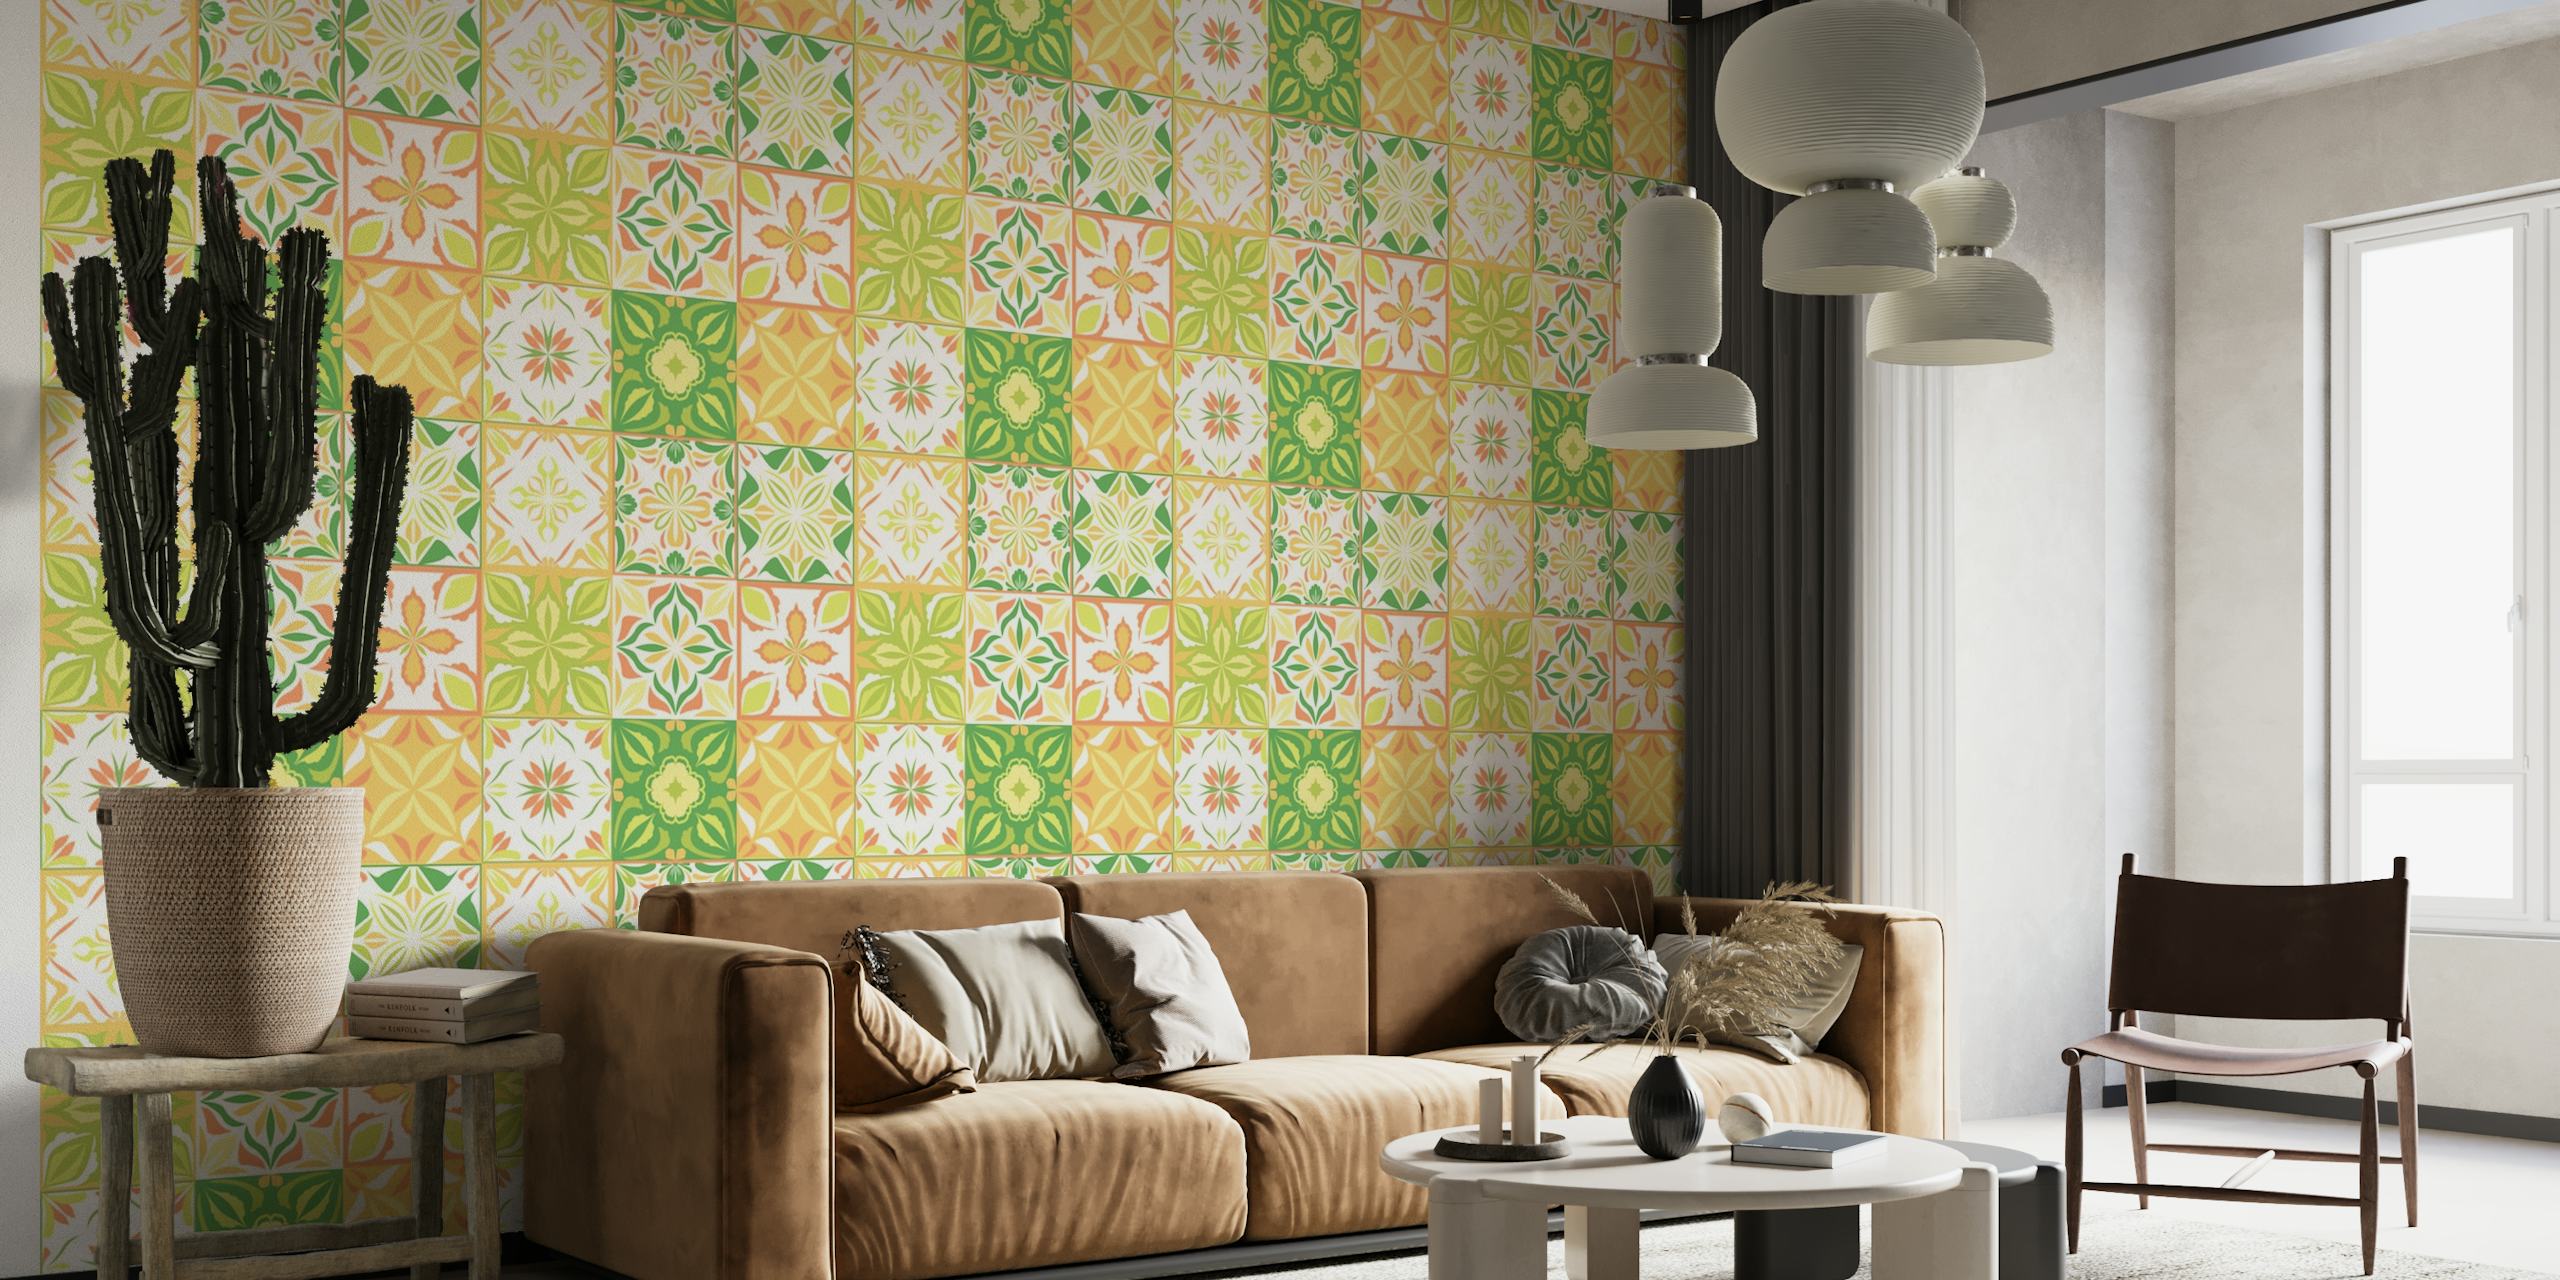 Ornate tiles 3 wallpaper